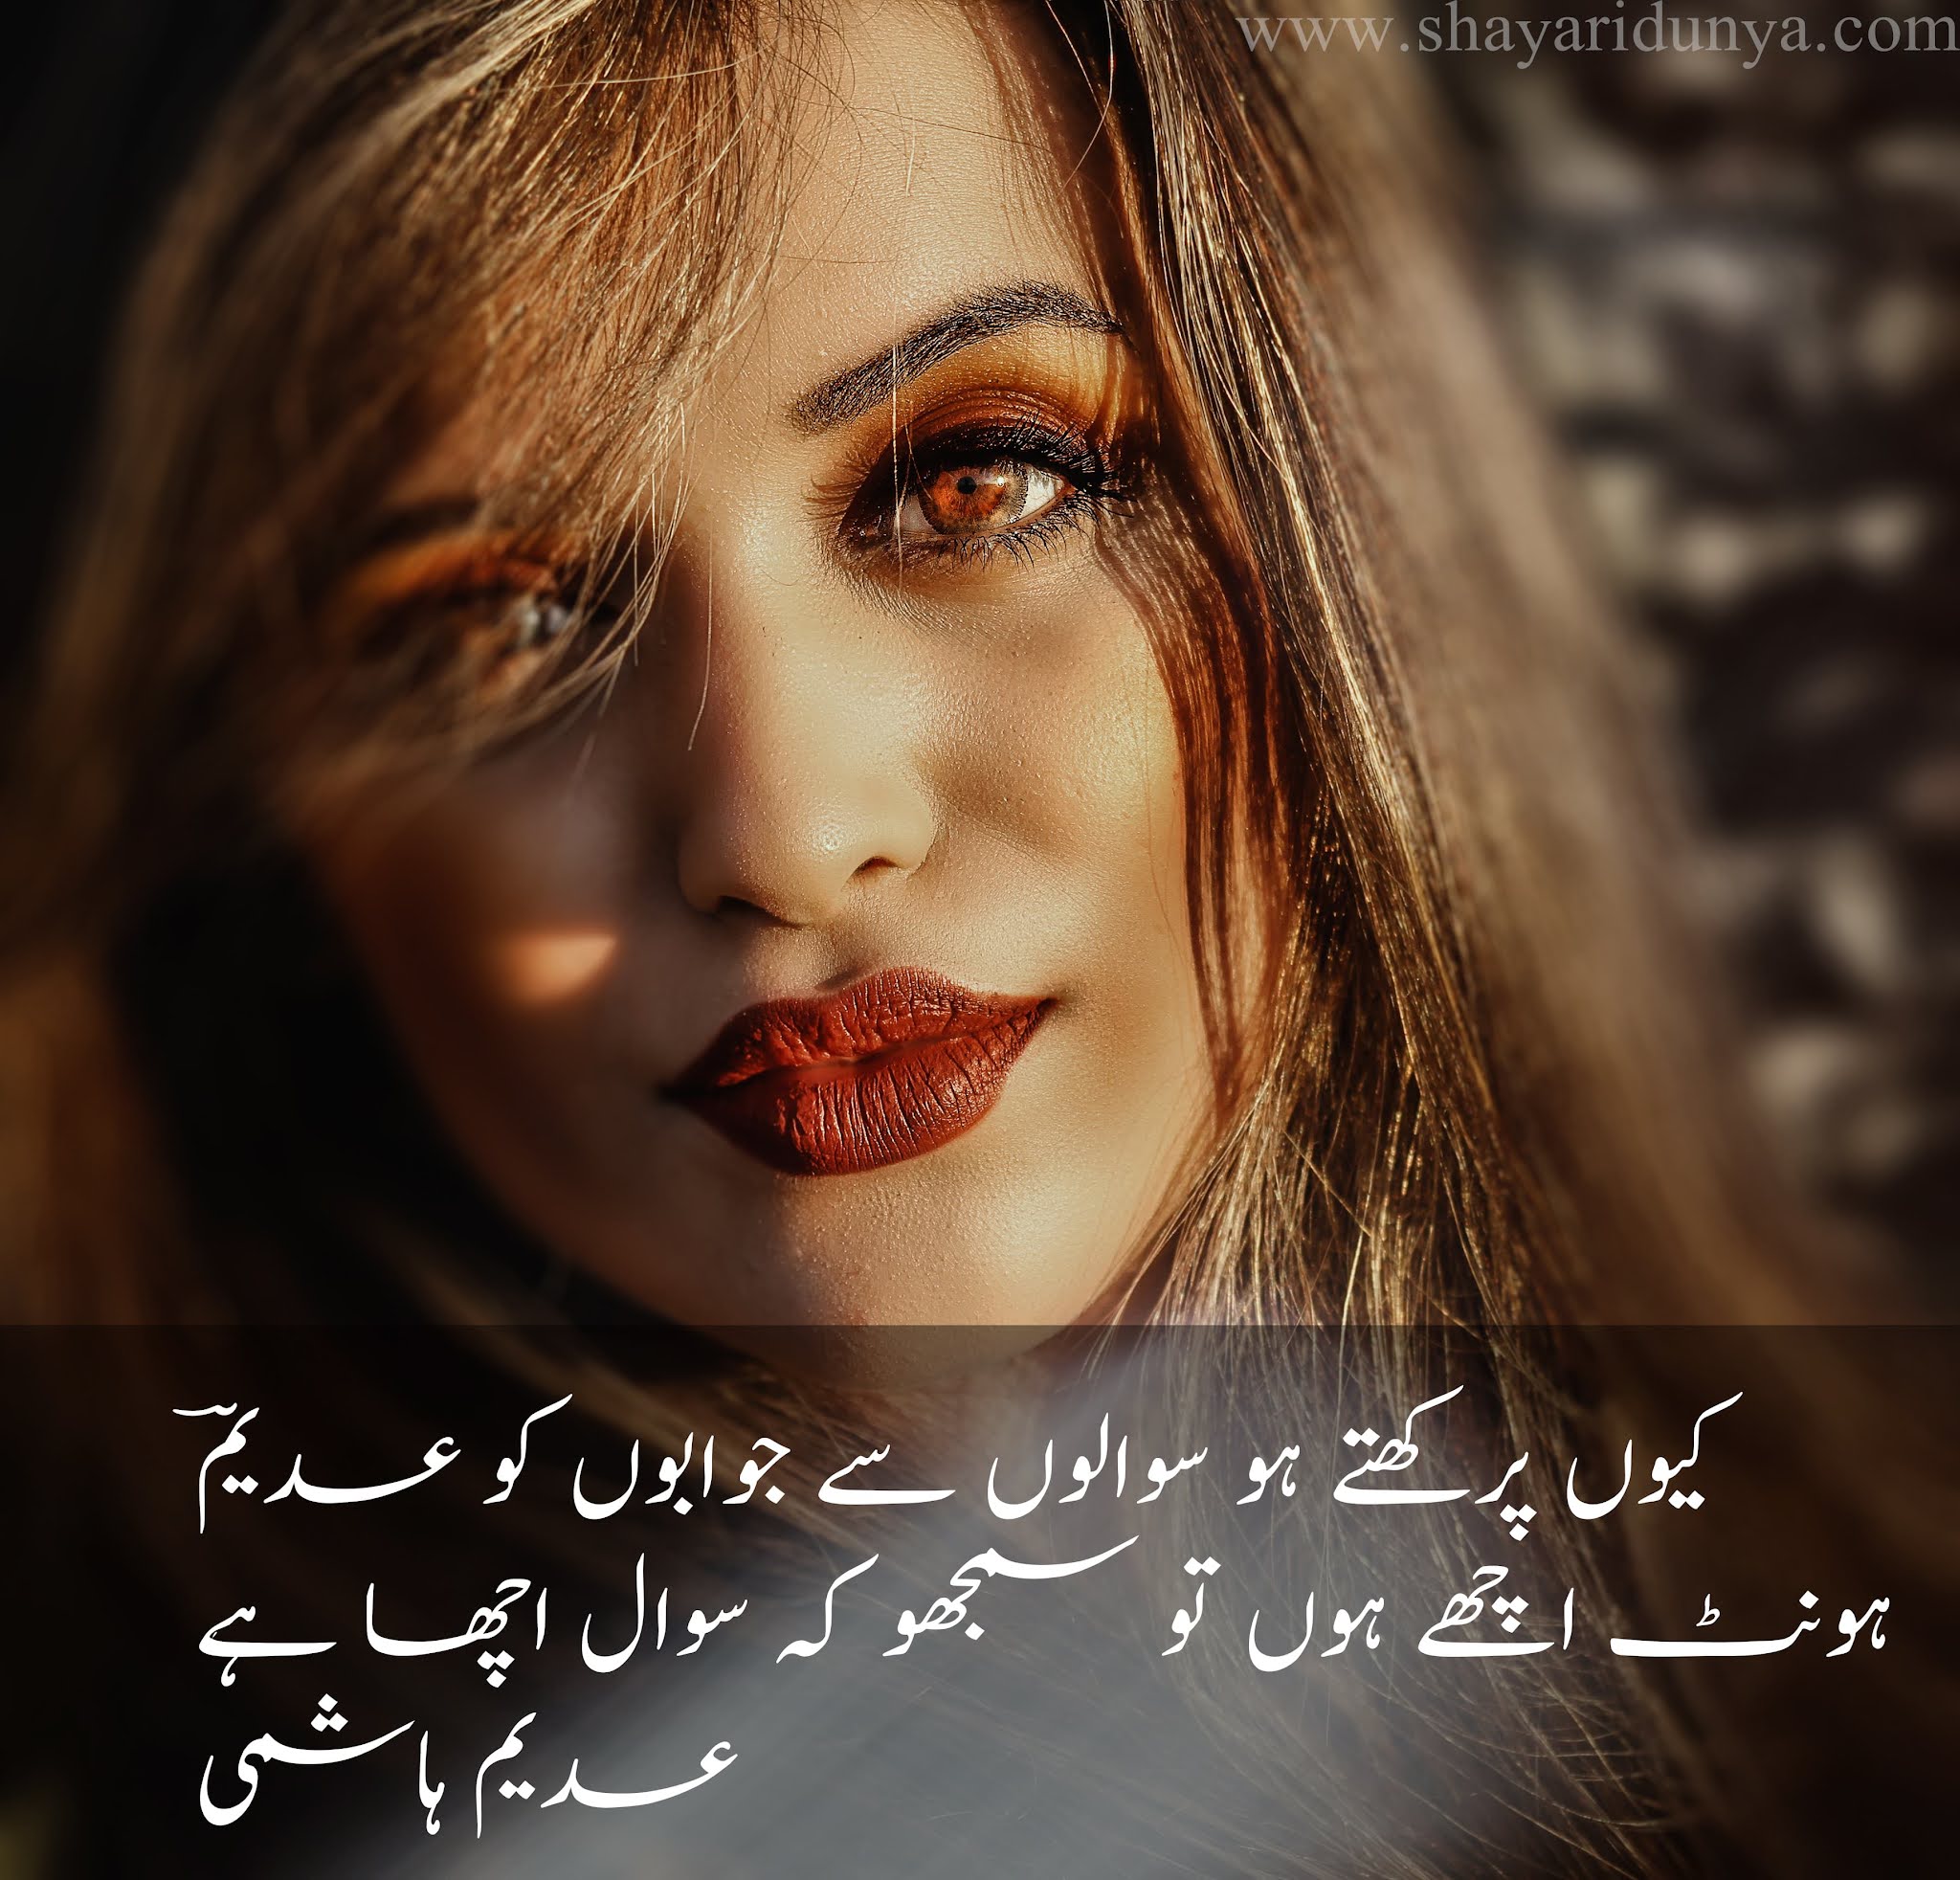 Lips Shayari | Lips Poetry in Urdu | Poetry on lips | Shayari on lips | hont poetry 2 lines